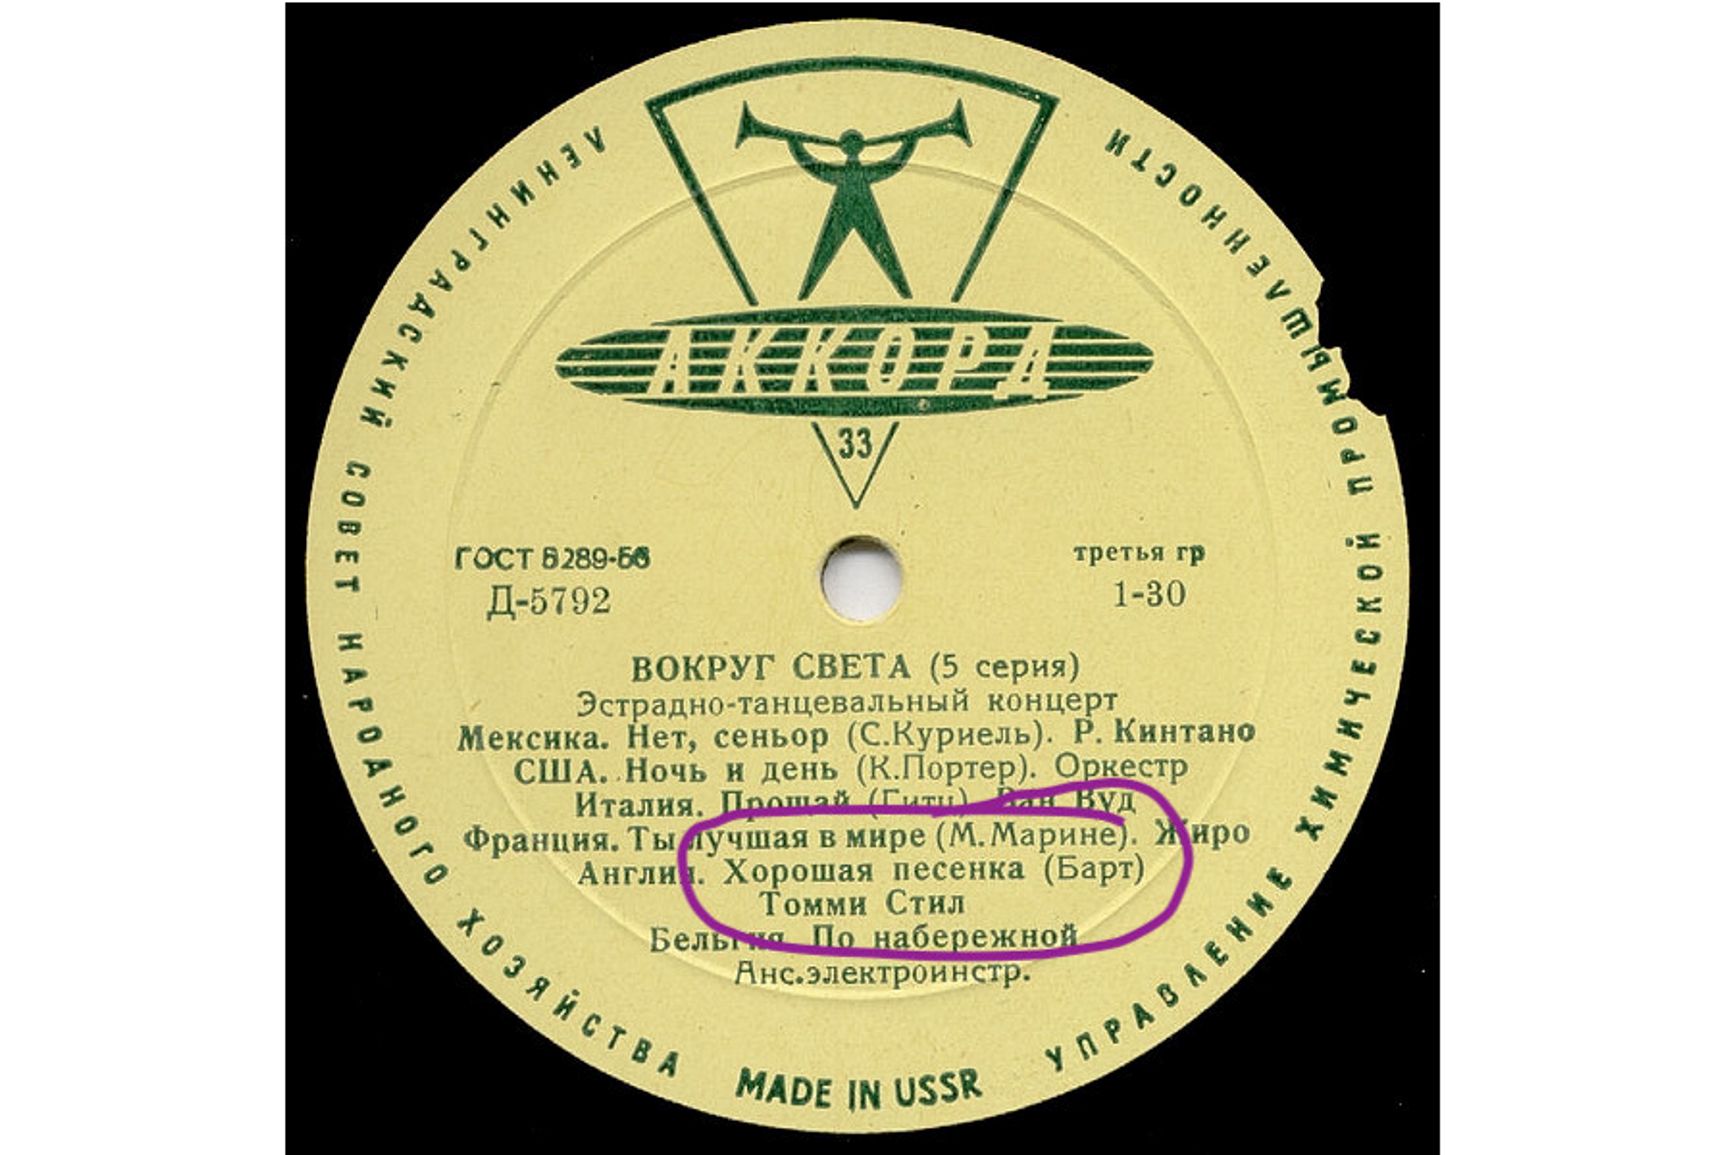 Лейбл советского диска с хитом Томми Стила